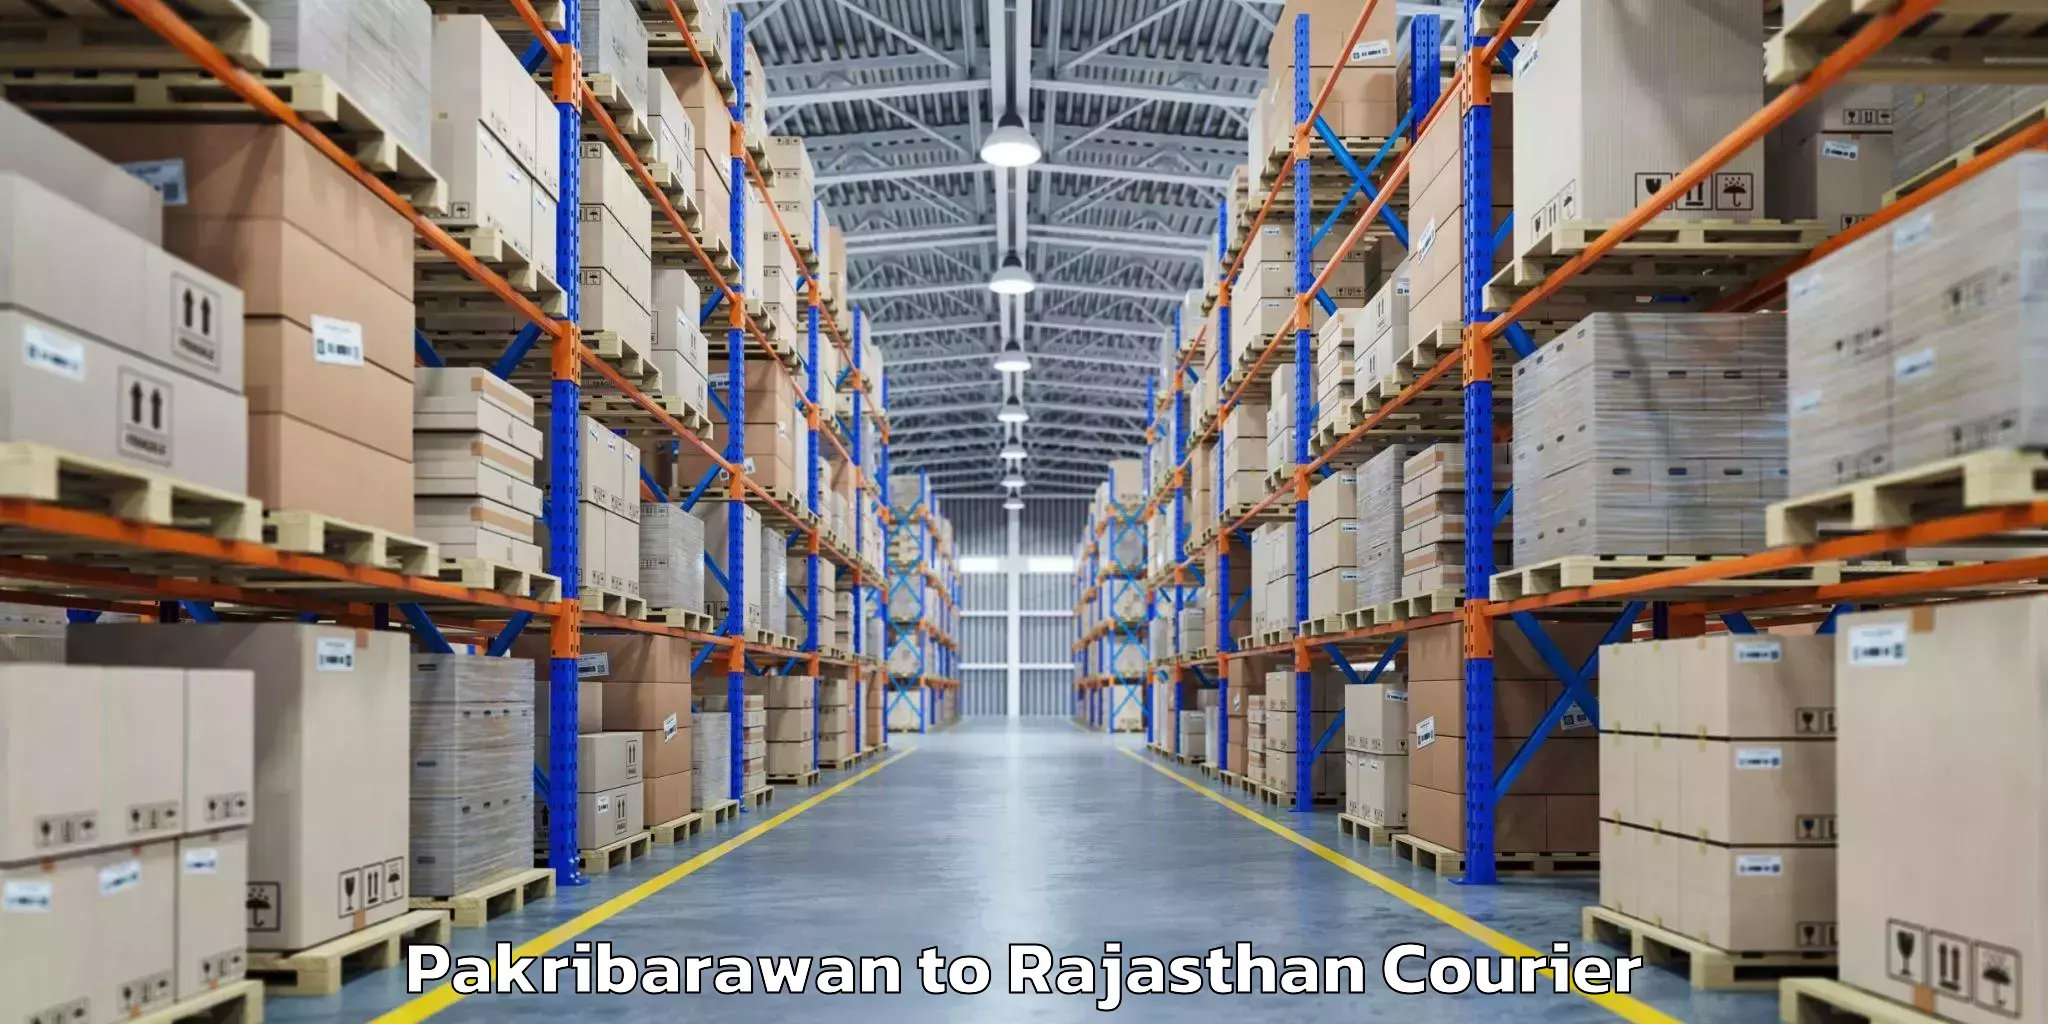 Baggage shipping schedule Pakribarawan to Rajasthan